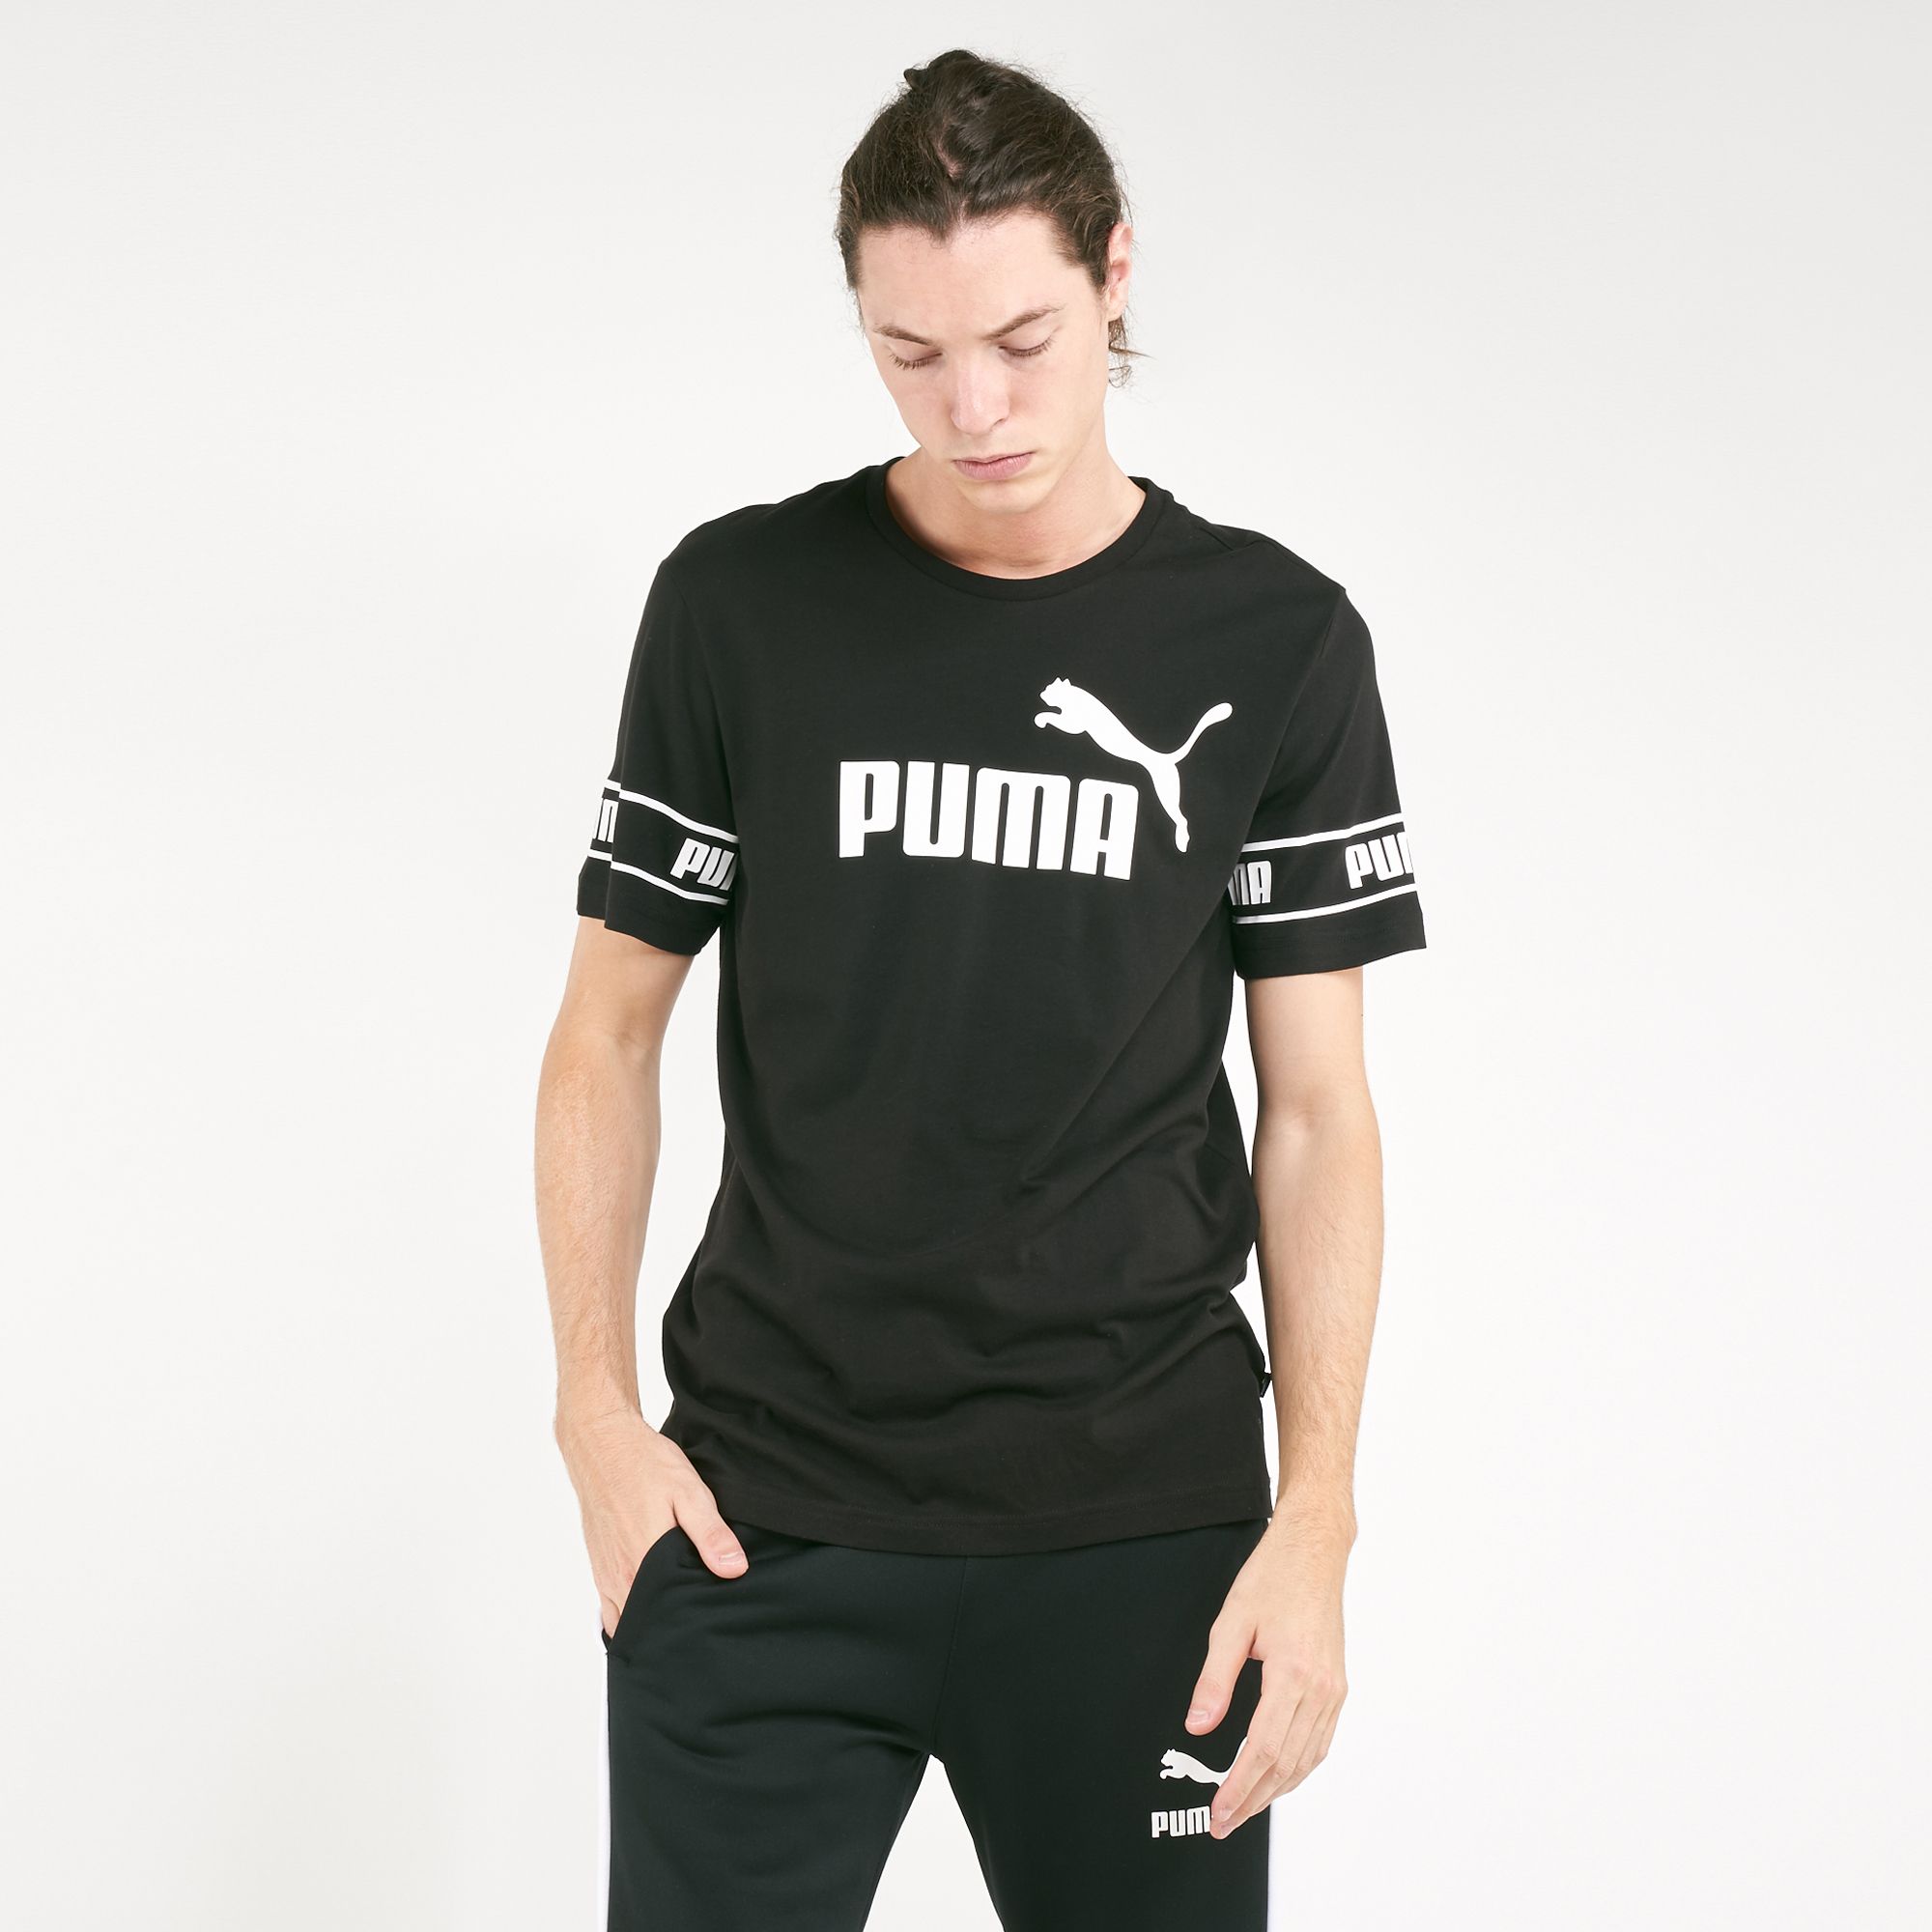 puma t shirt price in uae